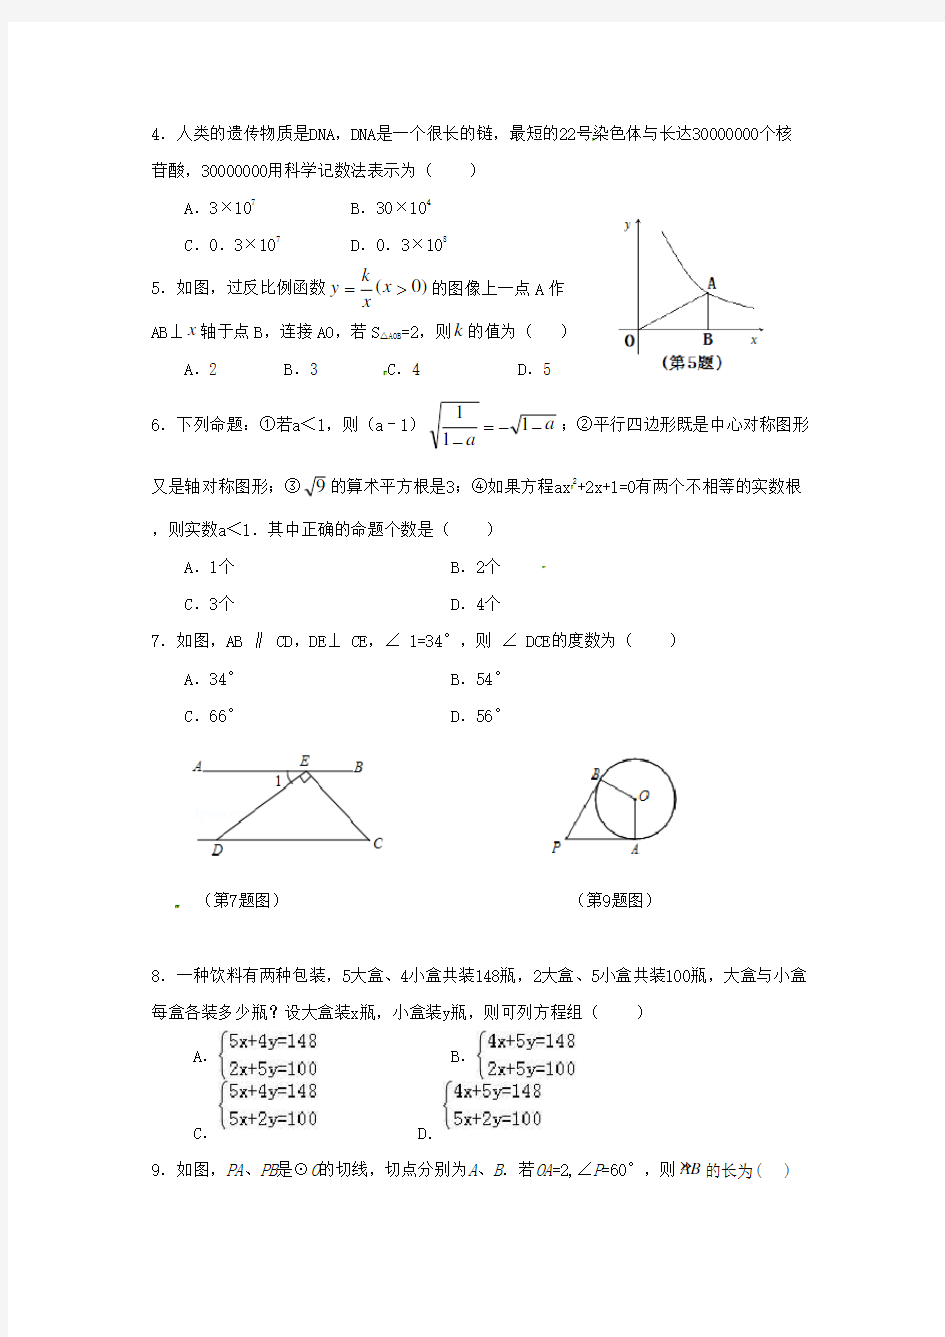 【2020年】湖南省中考数学模拟试题(含答案)